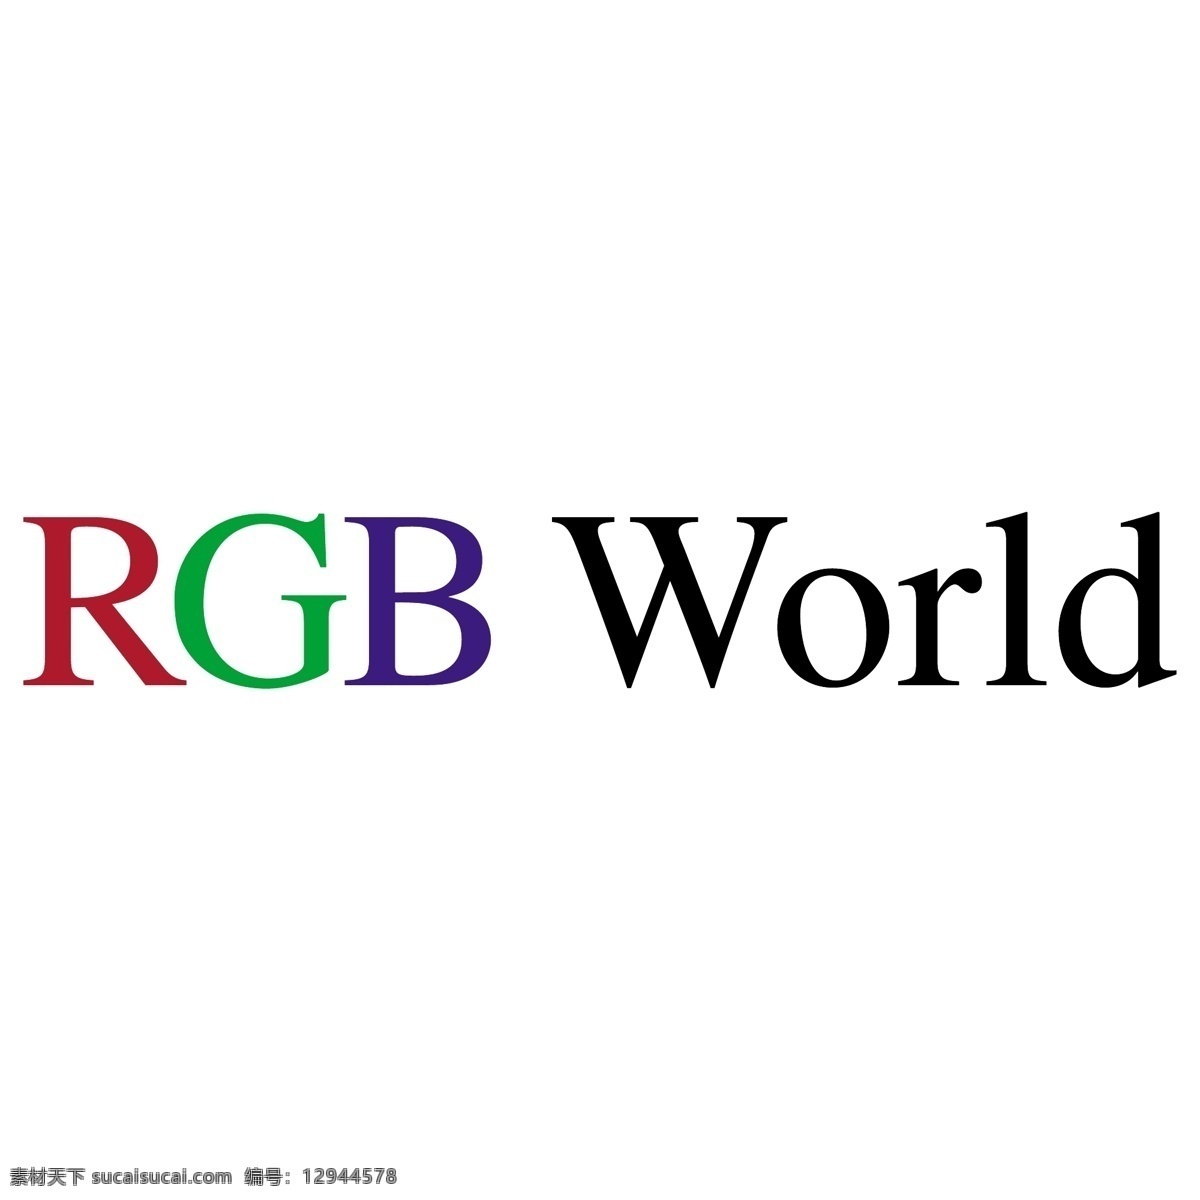 世界 标识 公司 免费 品牌 品牌标识 商标 矢量标志下载 免费矢量标识 矢量 psd源文件 logo设计